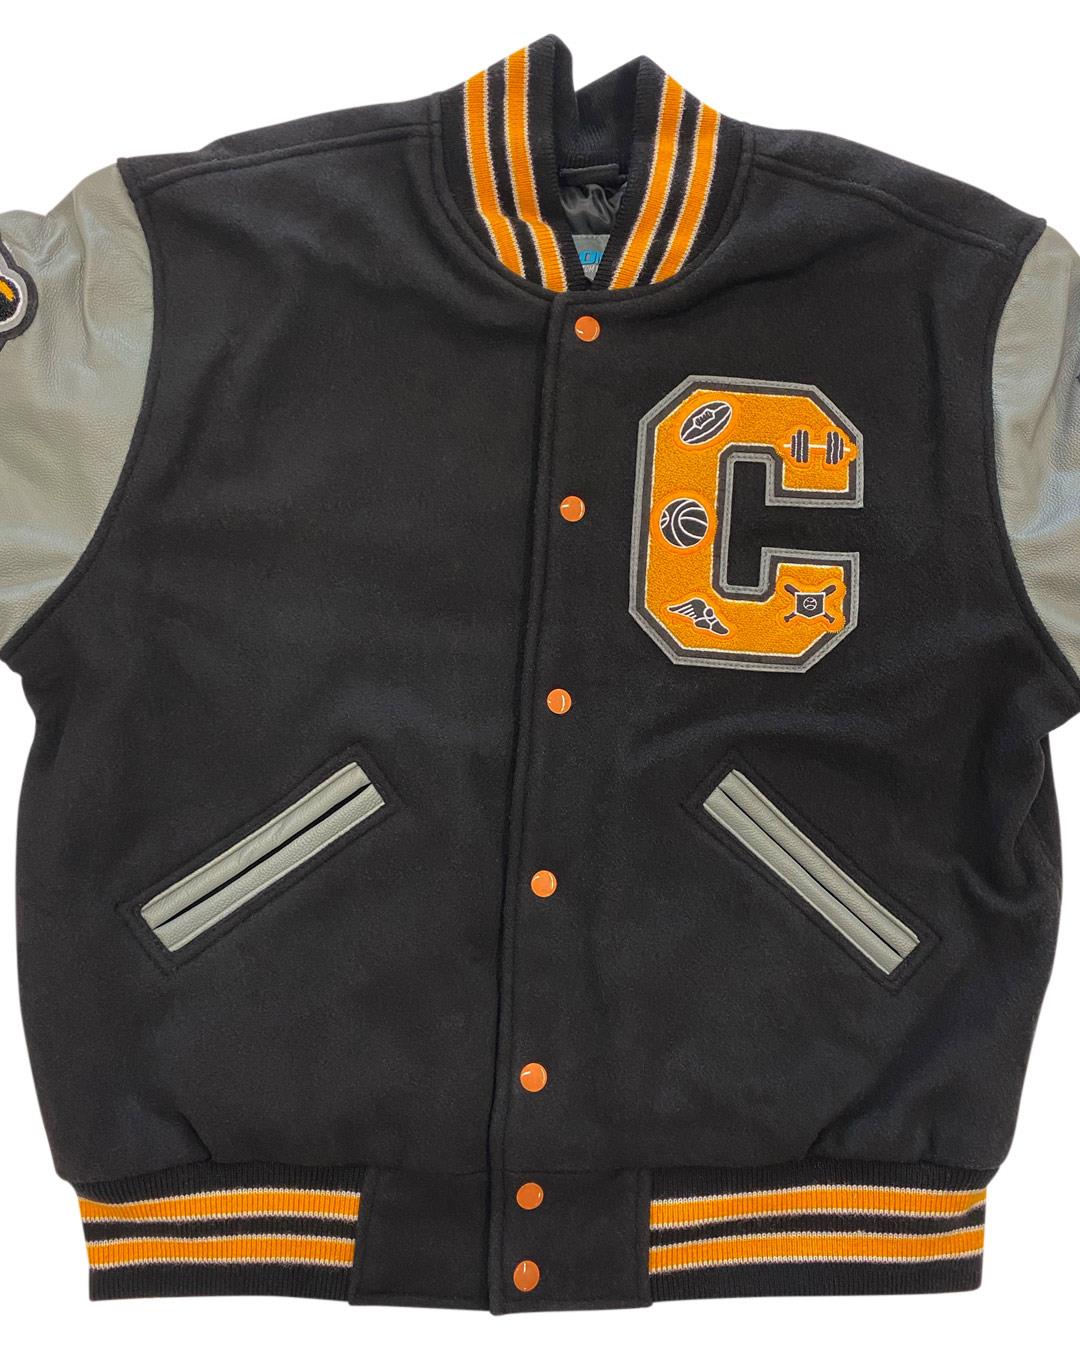 Caddo High School Letterman Jacket, Caddo OK